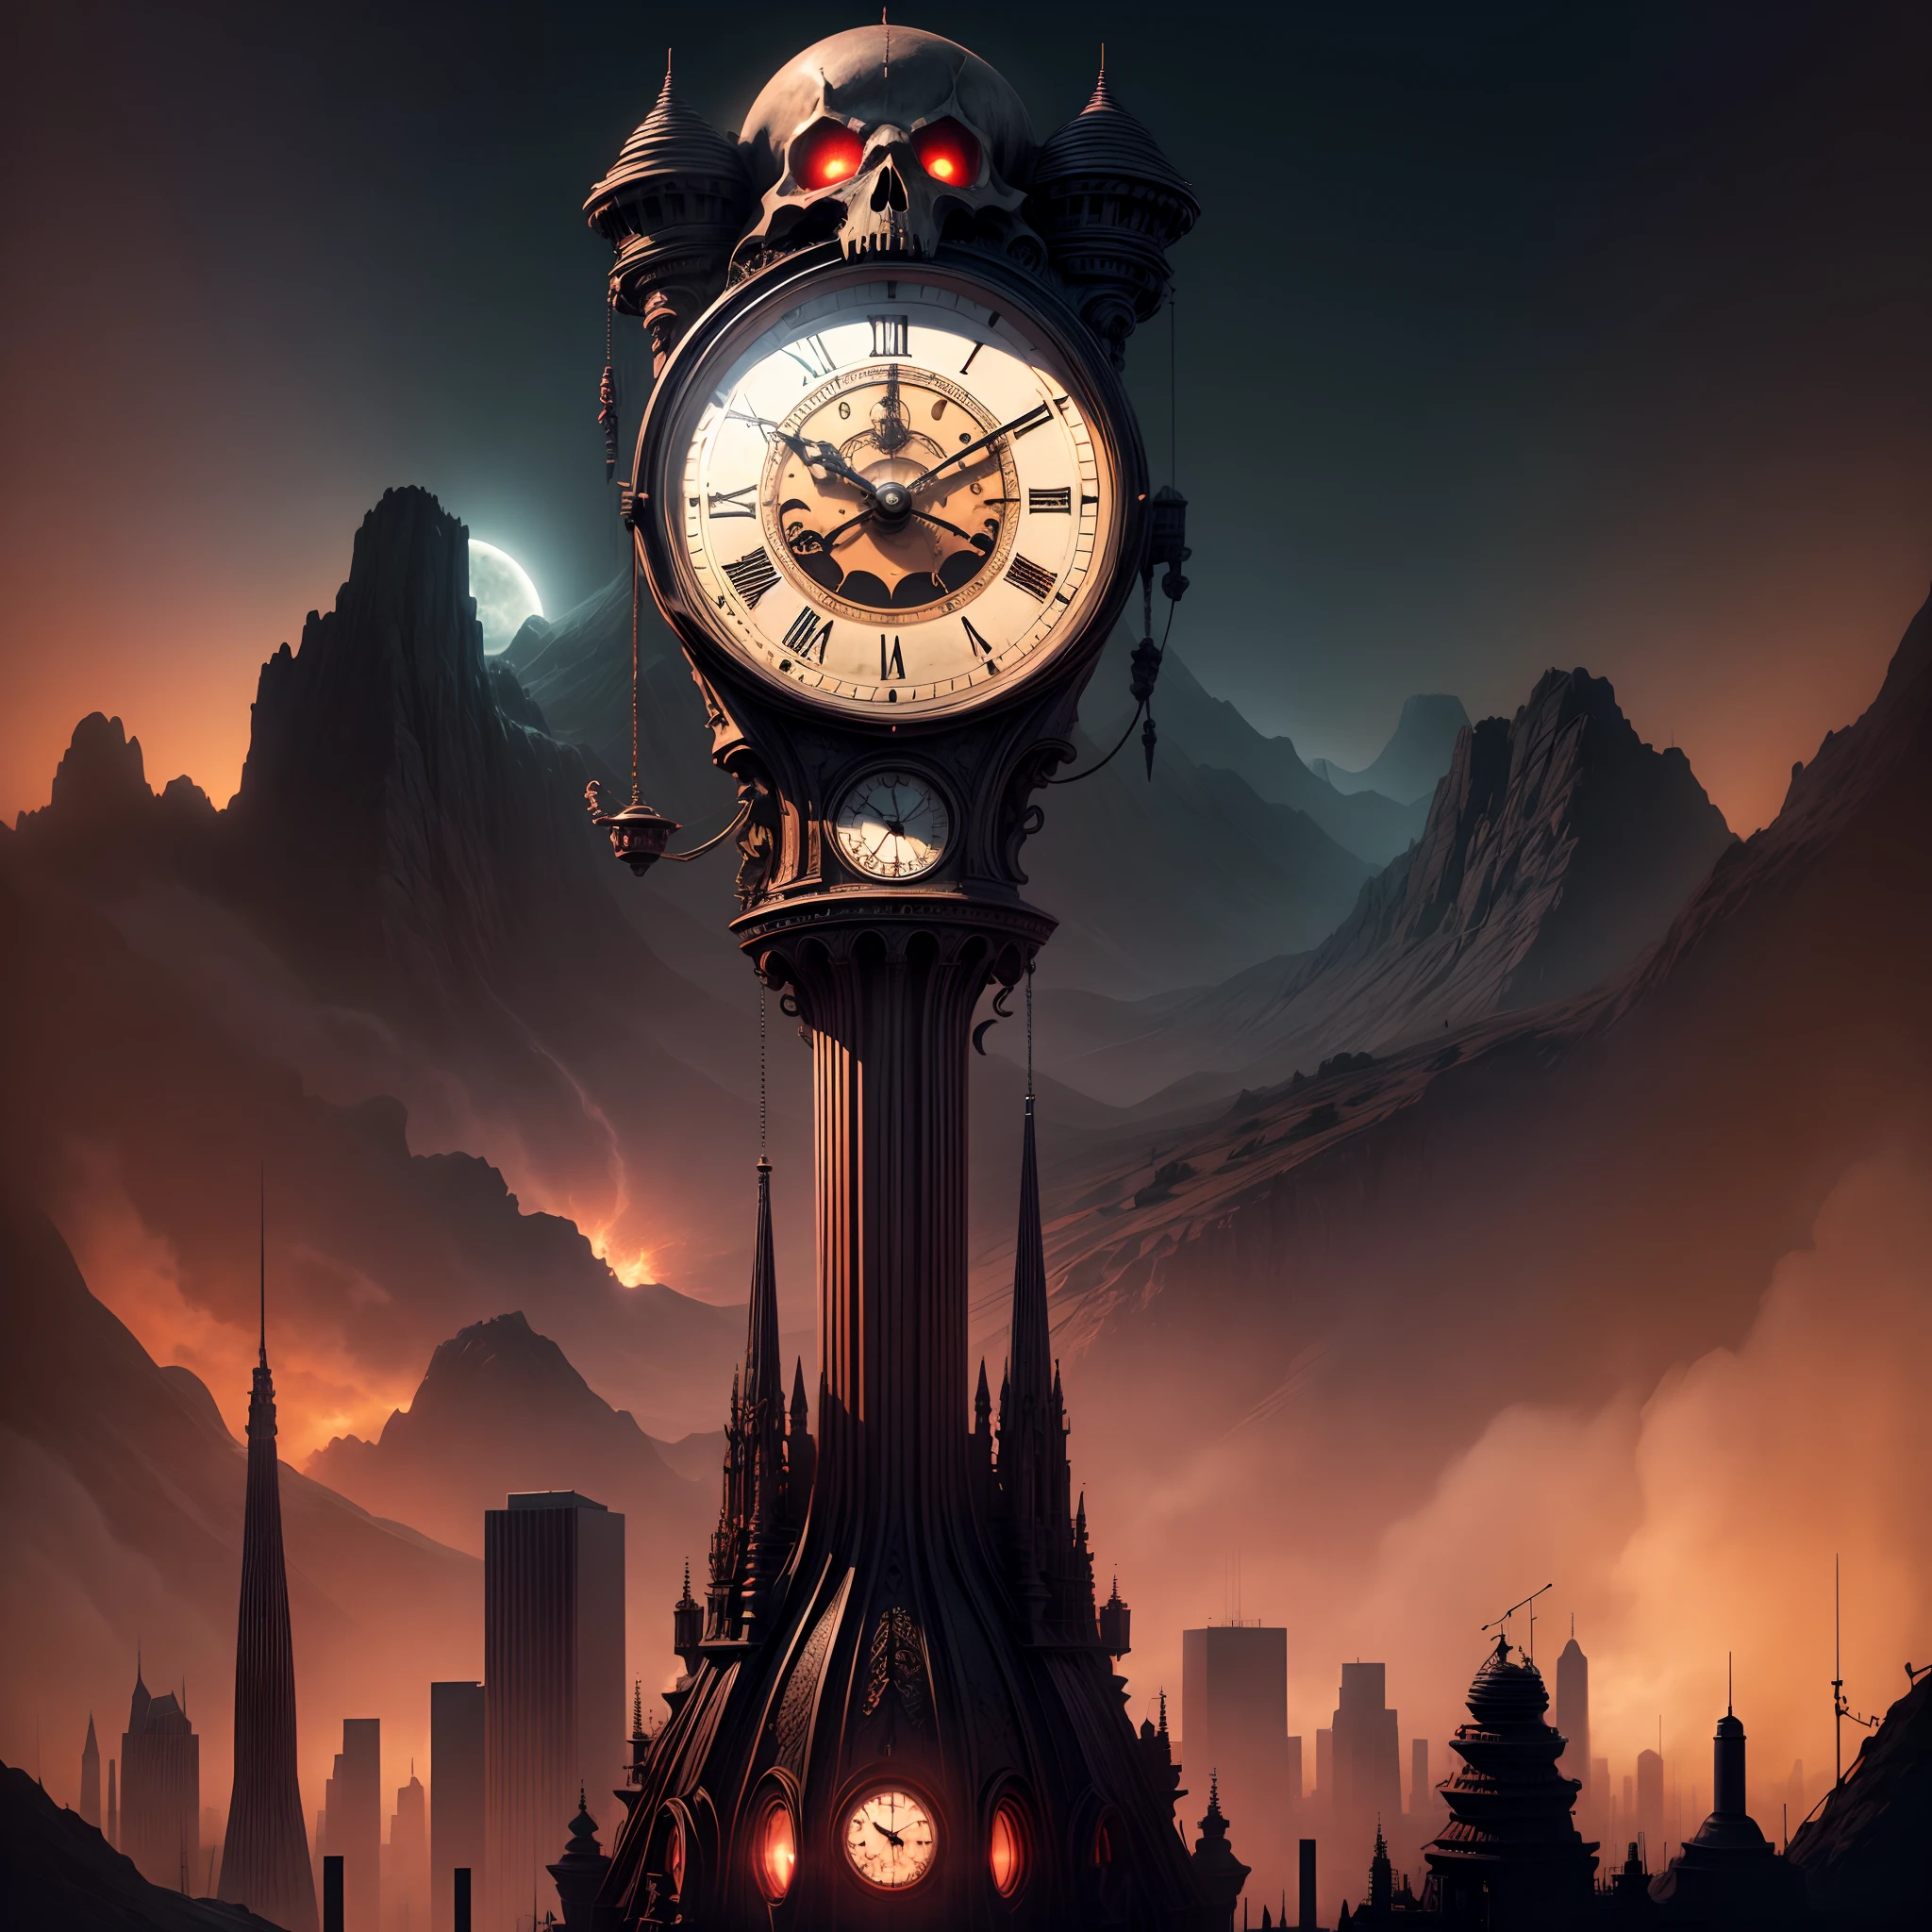 Une horloge à pendule antique emblématique de la ville de Mars, Maintenant imprégné d'éléments d'horreur et de mort. HORLOGE, Paysage urbain futuriste avec sol martien rouge en toile de fond, Dégage une aura étrange. Il juxtapose l'architecture de science-fiction, Son design complexe prend un côté sinistre，Et avec des notes de motif de crâne. Le cadran de l'horloge ressemble à un crâne souriant, Le pendule imite une faucille. L'horizon de Mars est dominé par cette présence inquiétante, Créez une atmosphère surréaliste et surnaturelle, Avec un soupçon de peur. Le paysage est hanté, Des personnages et des ombres effrayants ajoutent de la couleur au décor étrange. L'éclairage est dramatique, casting long, Ombres effrayantes，Souligner le caractère sinistre de l'horloge